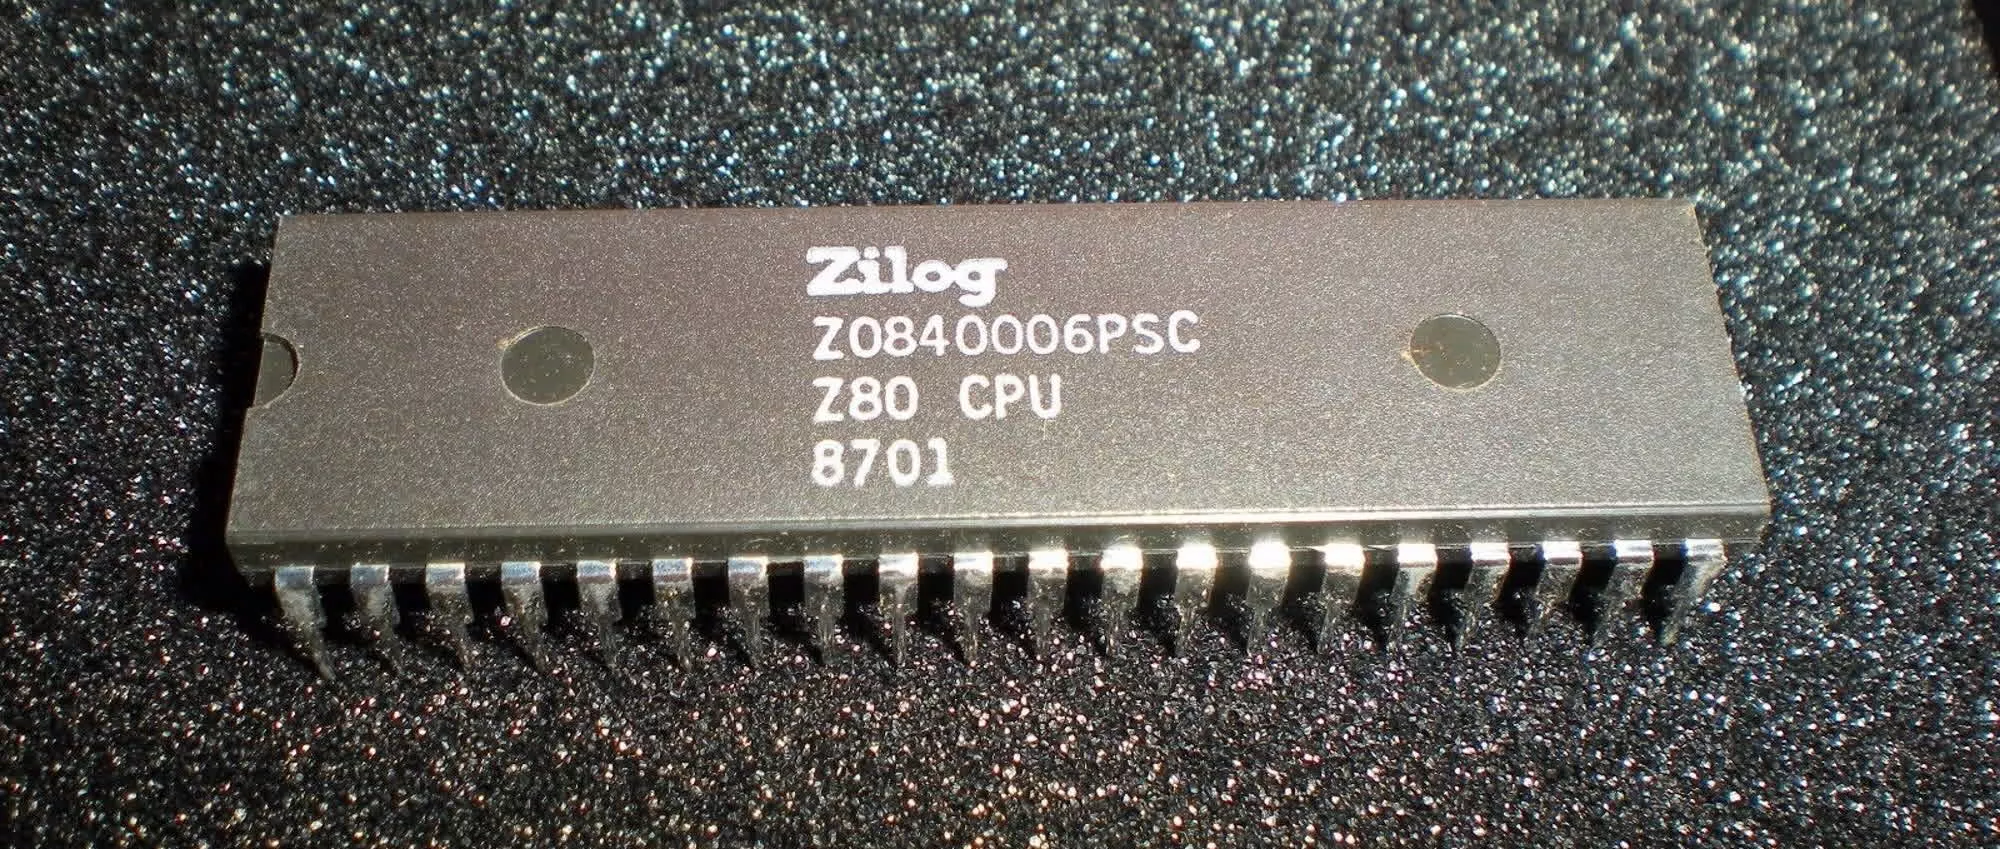 Zilog stellt den Z80 nach 48 Jahren Produktionszeit ein